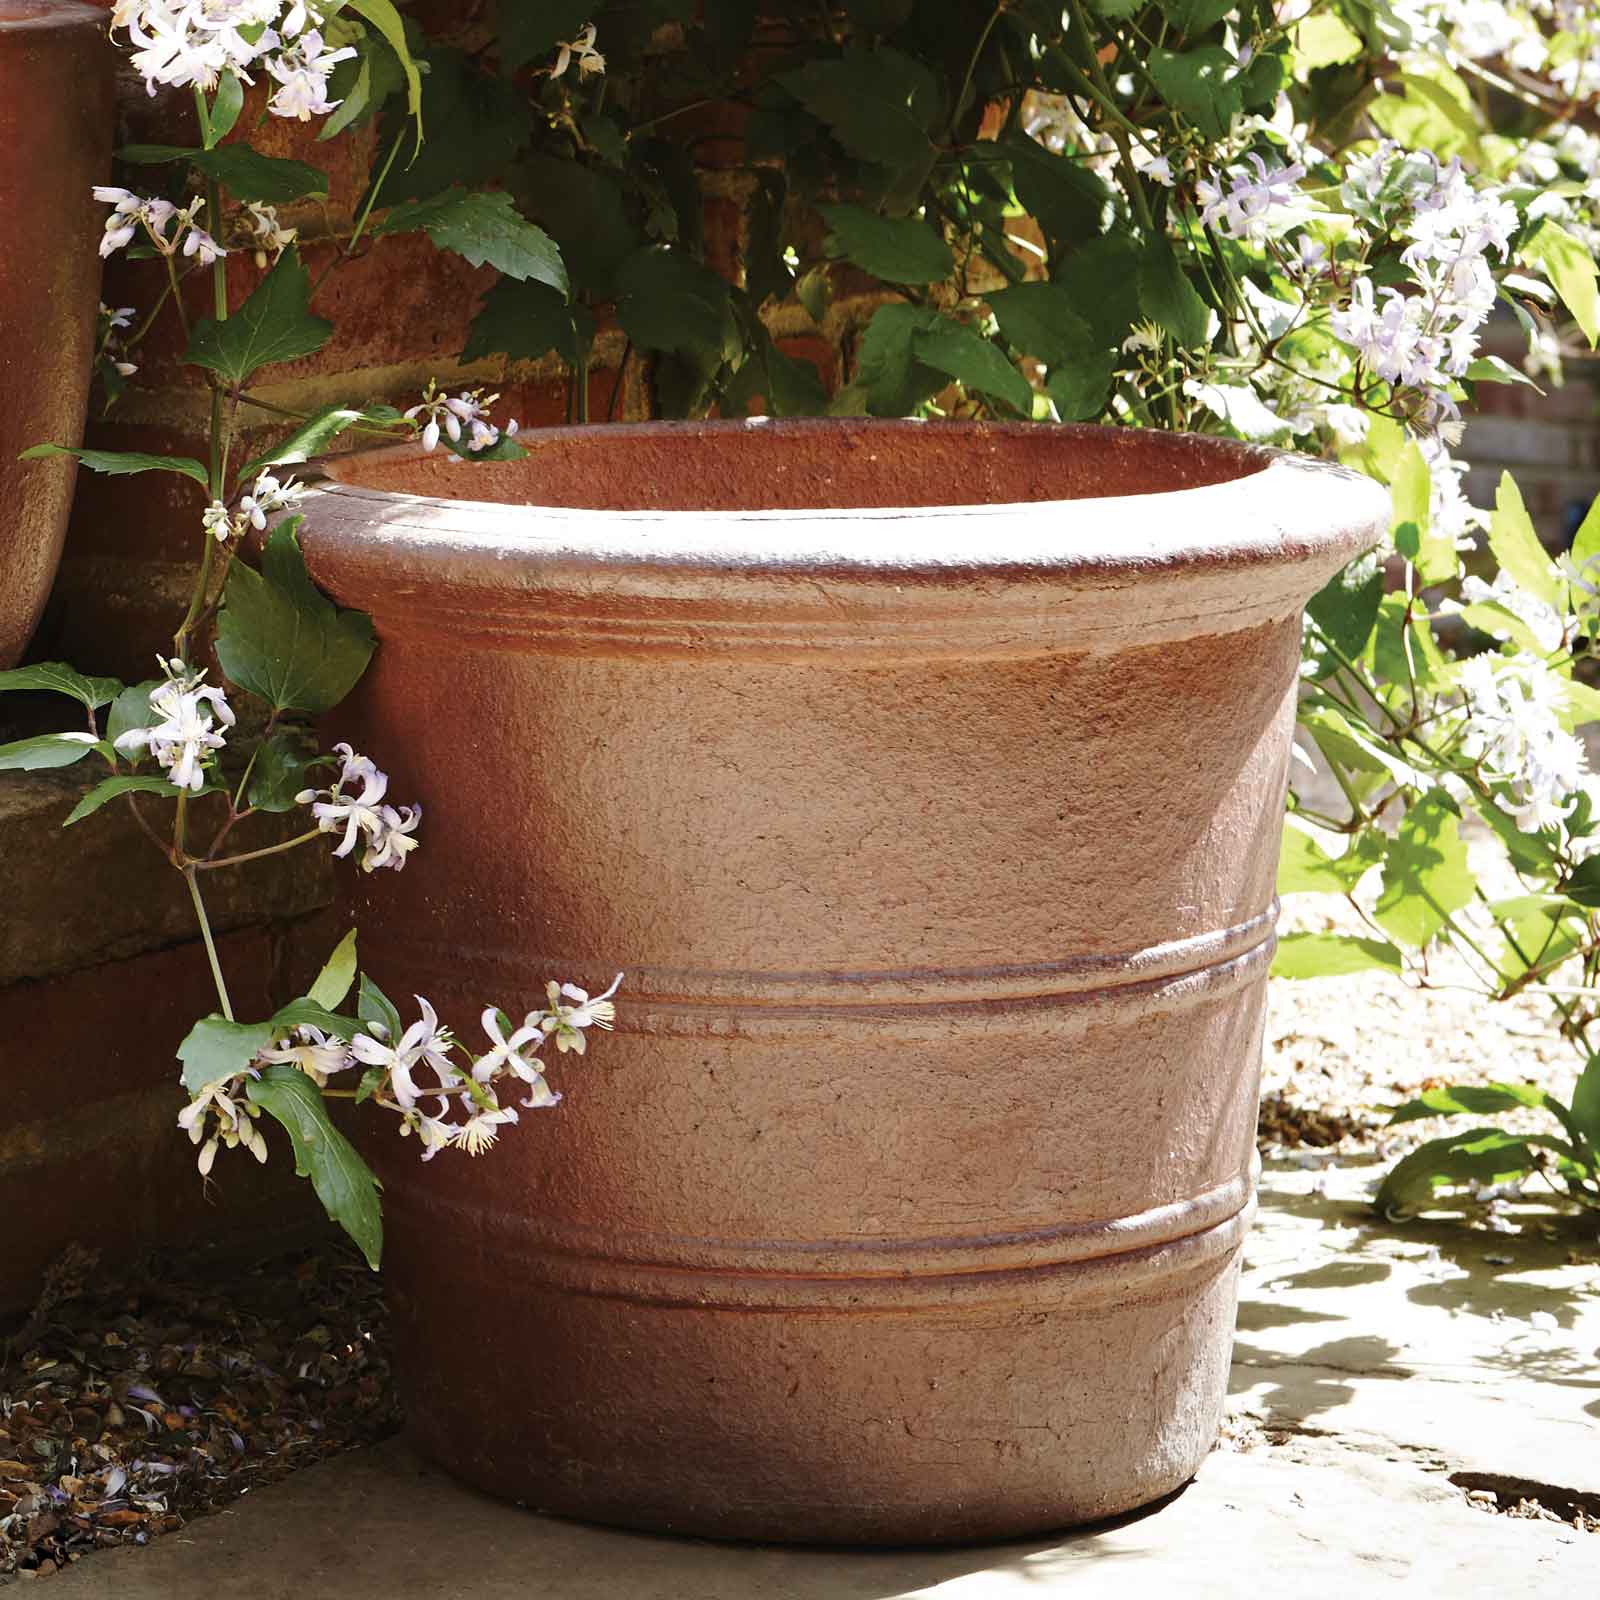 Florentine Terracini Pots - Harrod Horticultural